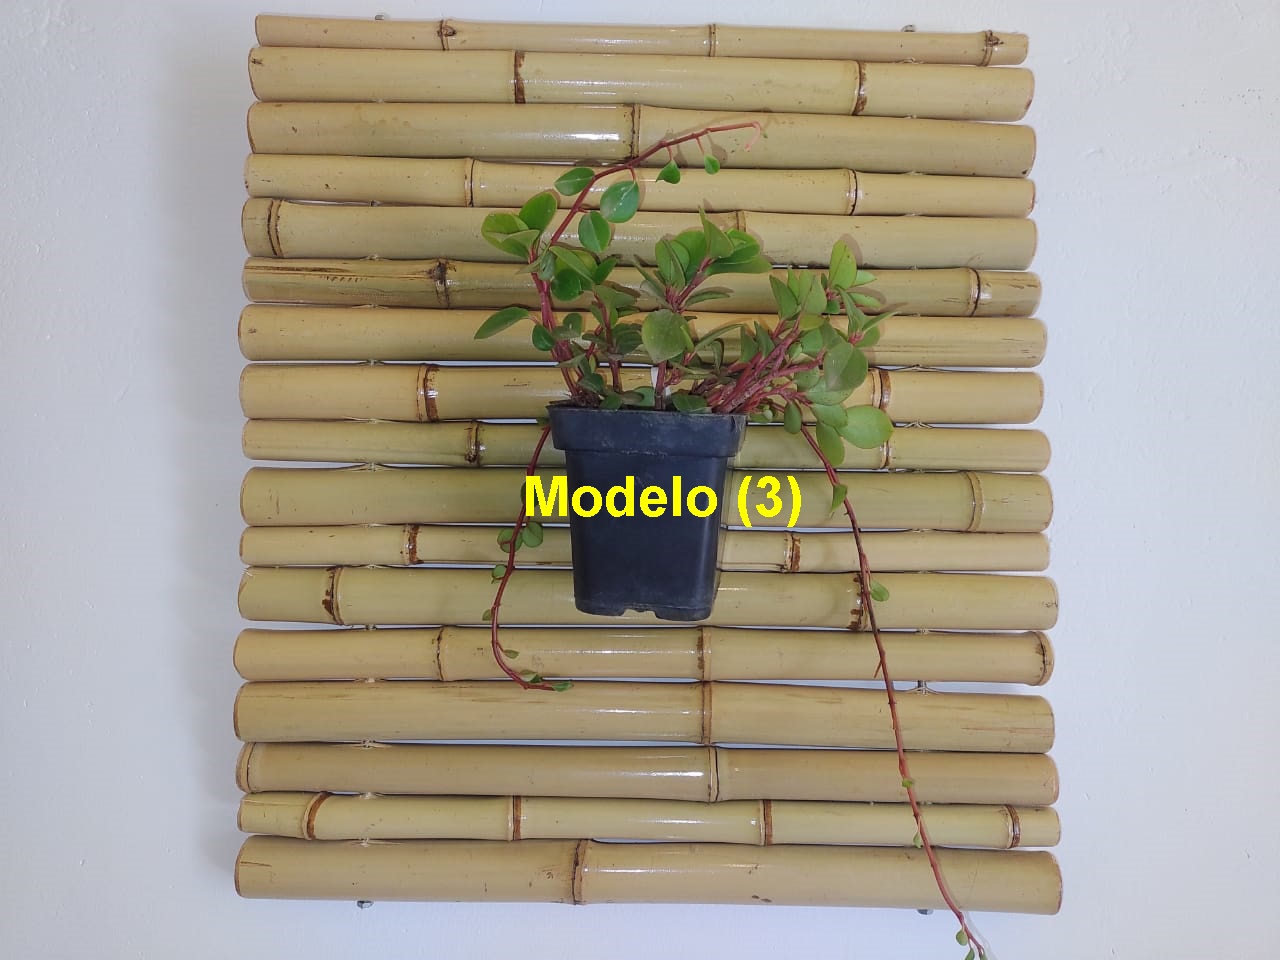 Suporte de bambu para plantas modelo (3) escuro